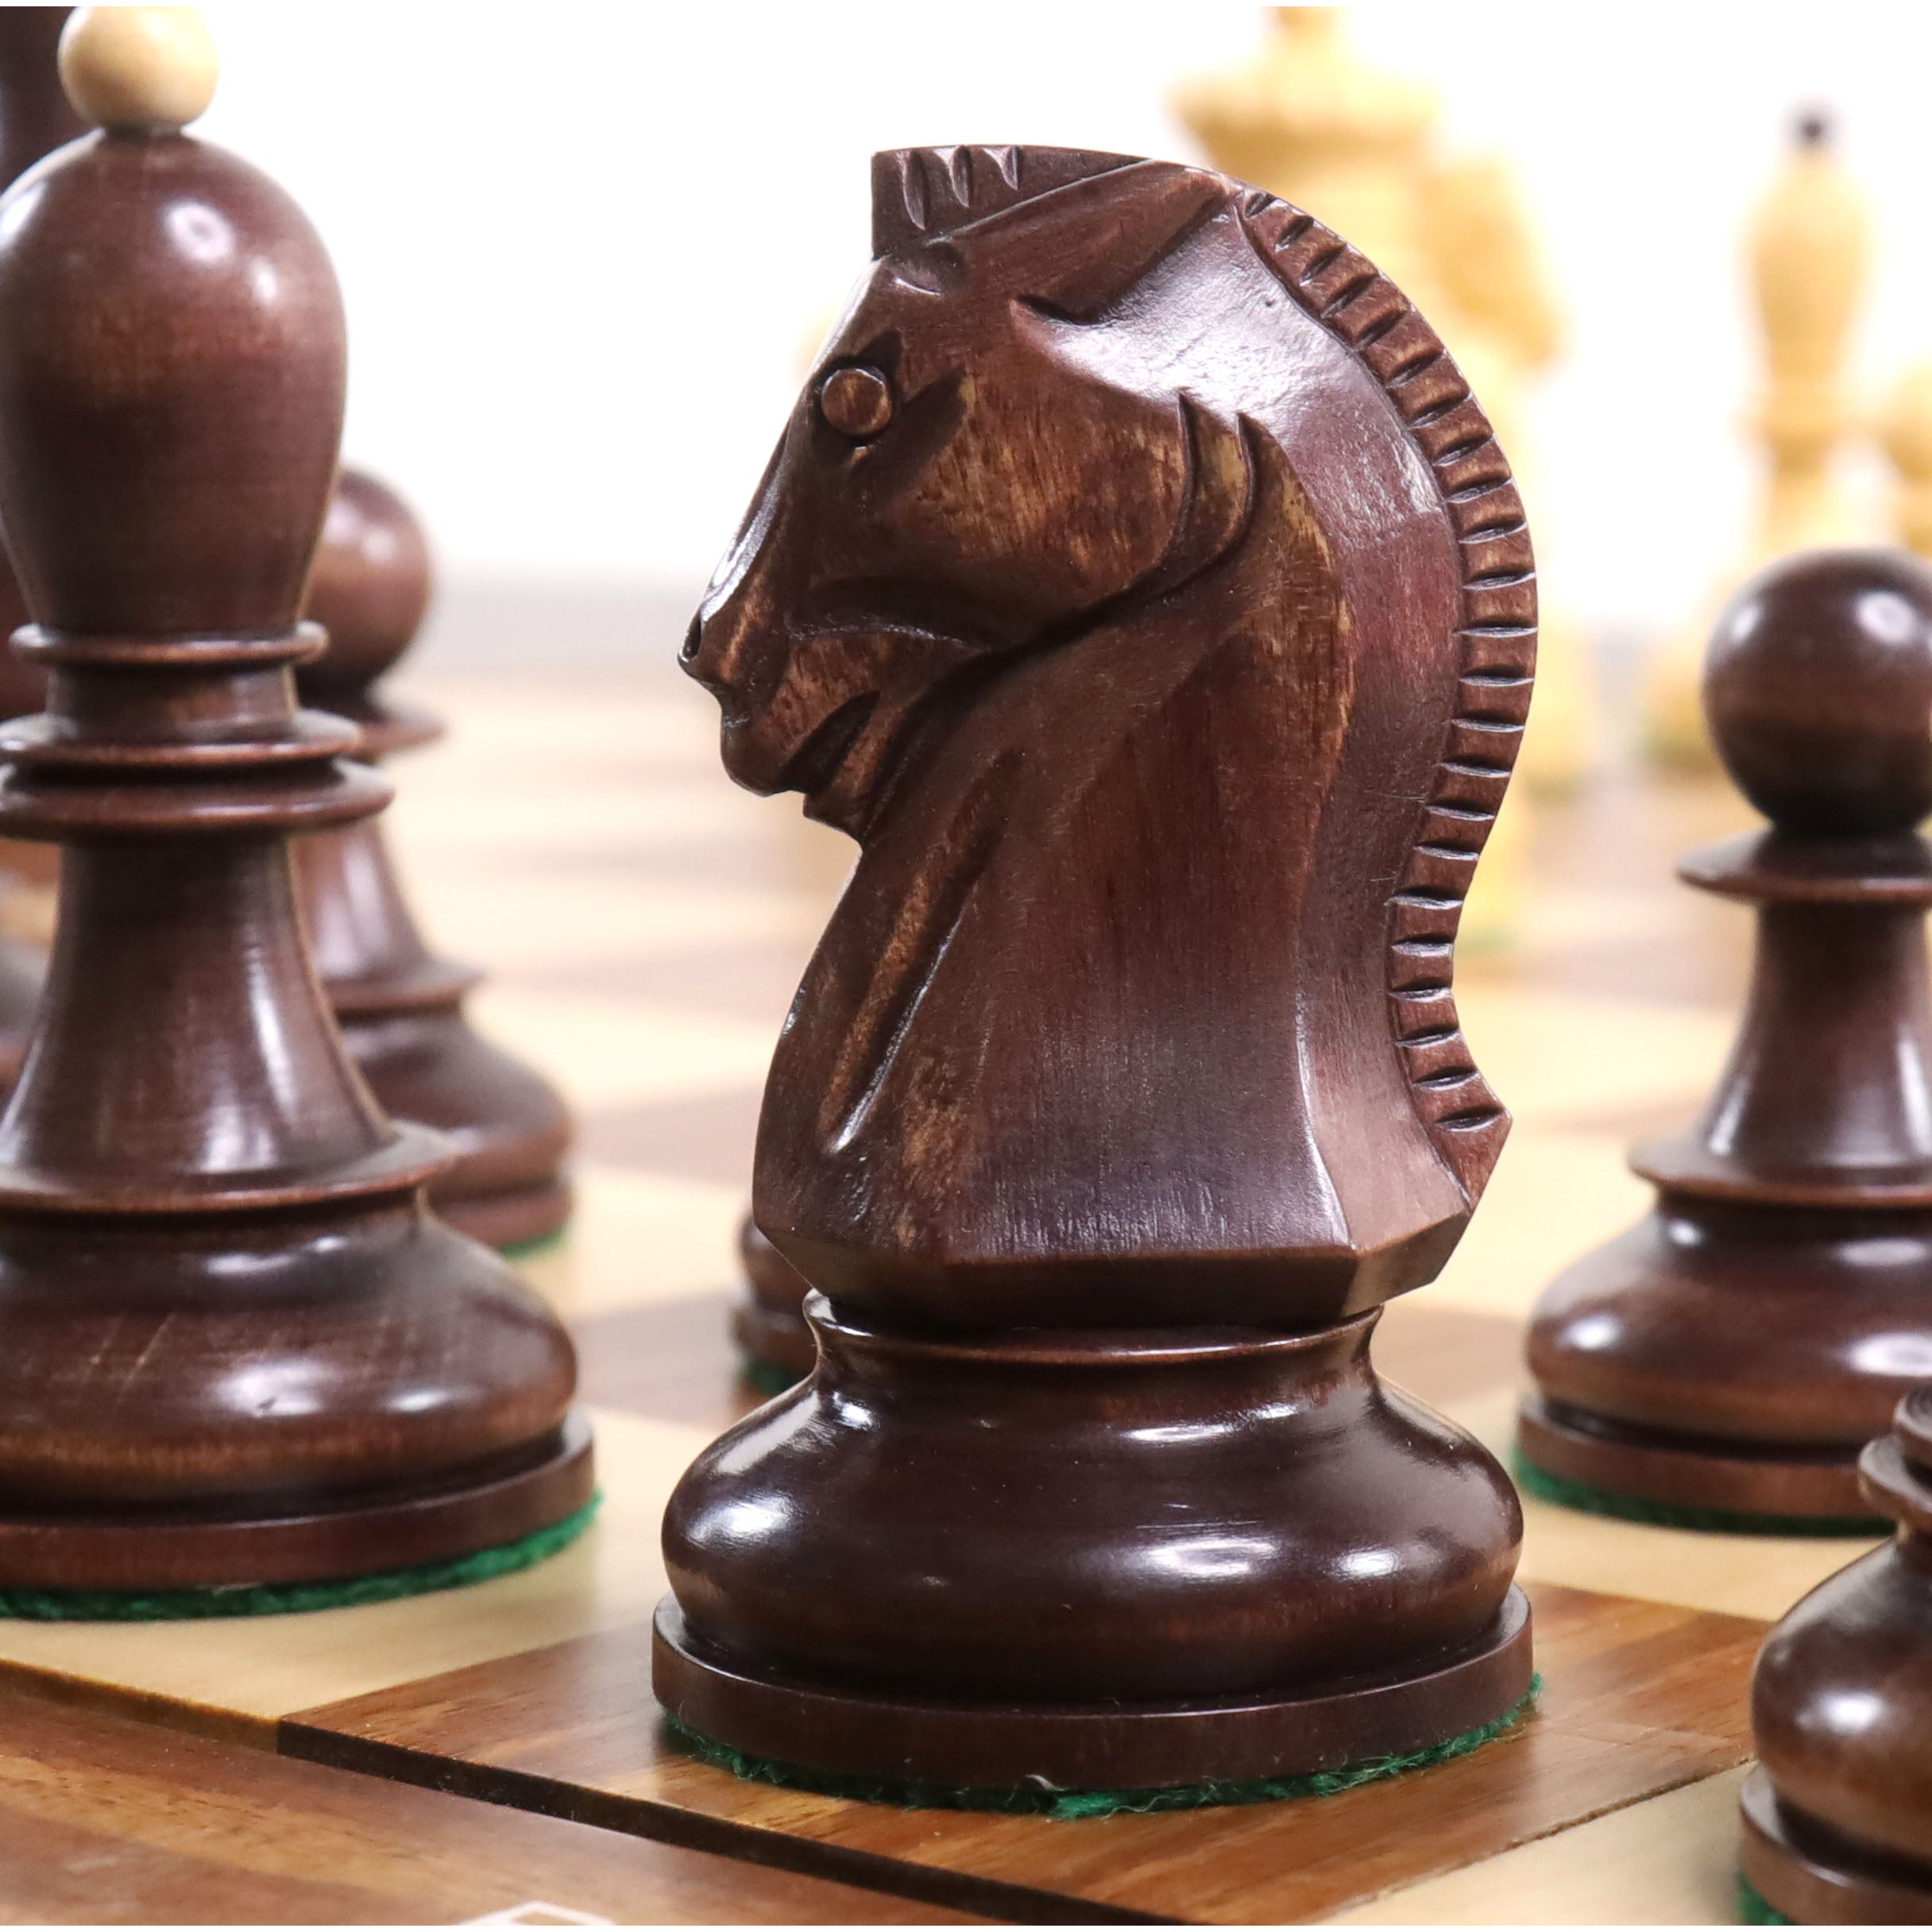 Peças de xadrez Dubrovnik 1950 Black - favorito do Bobby Fischer